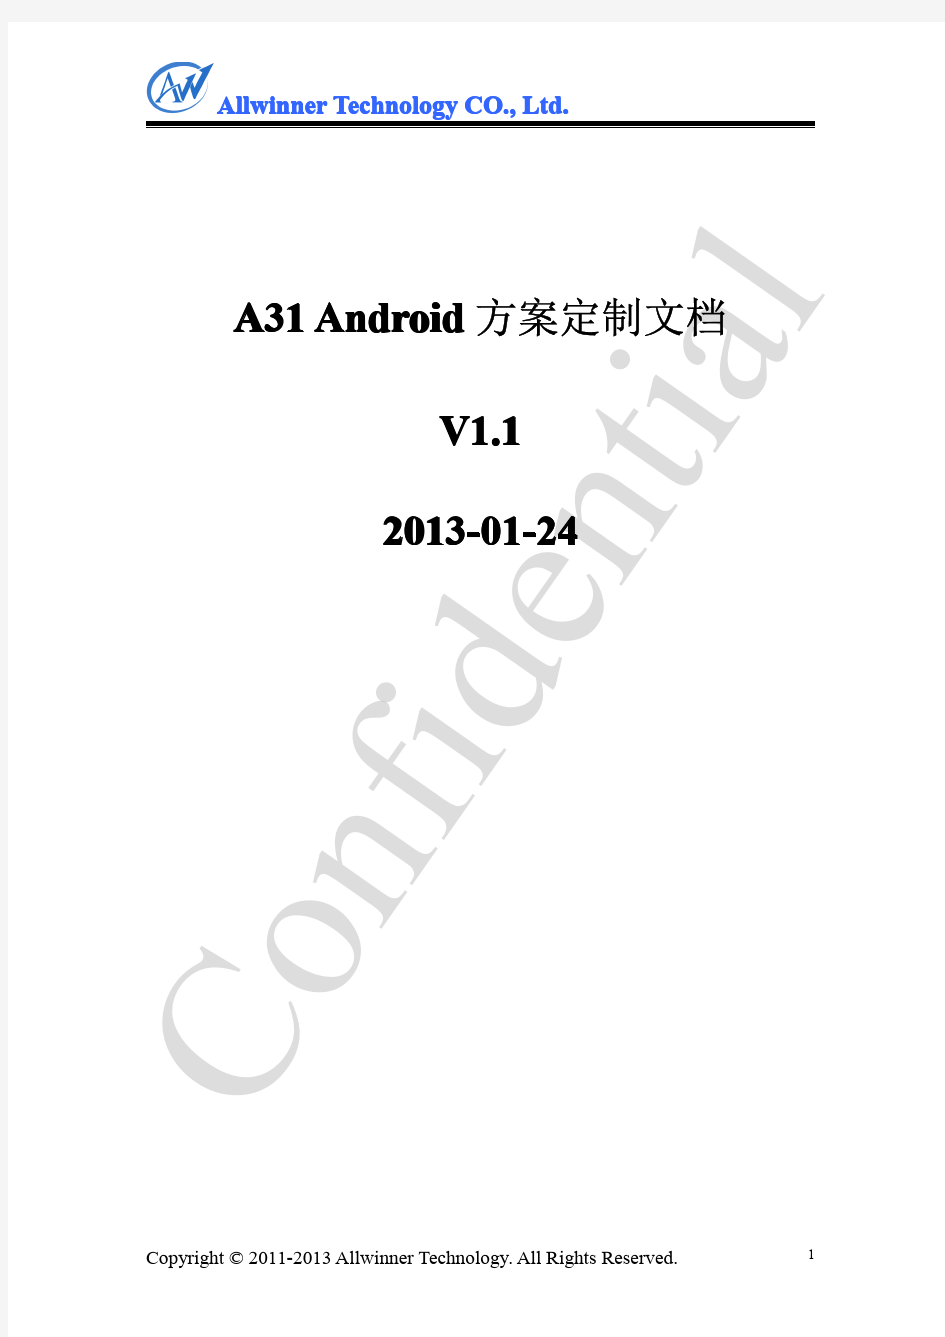 A31_Android内容定制说明文档V1.1 20130123